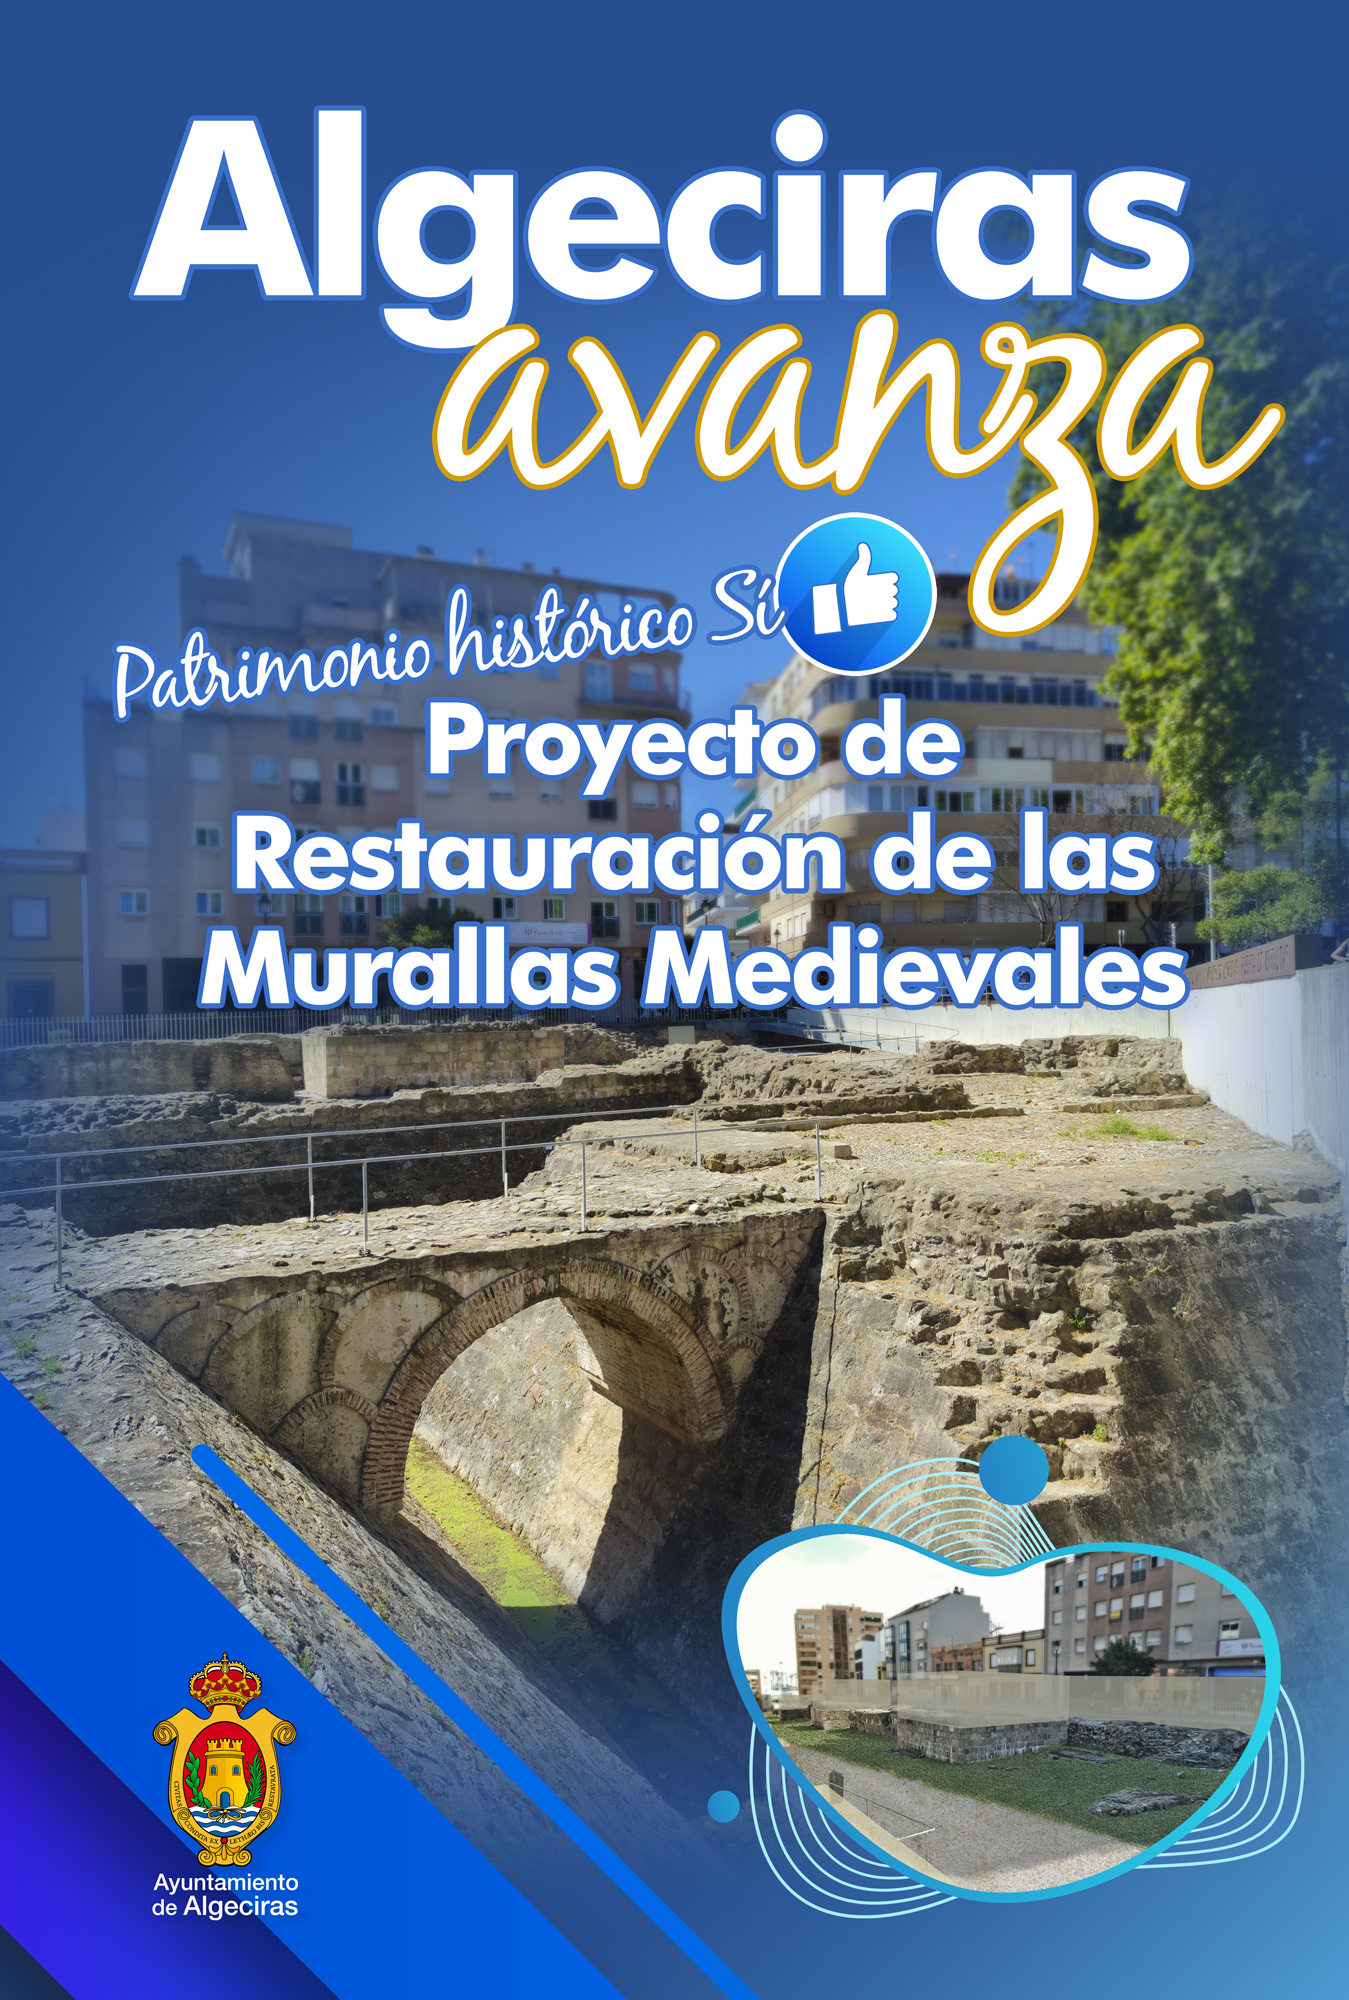 Algeciras avanza Murallas Medievales